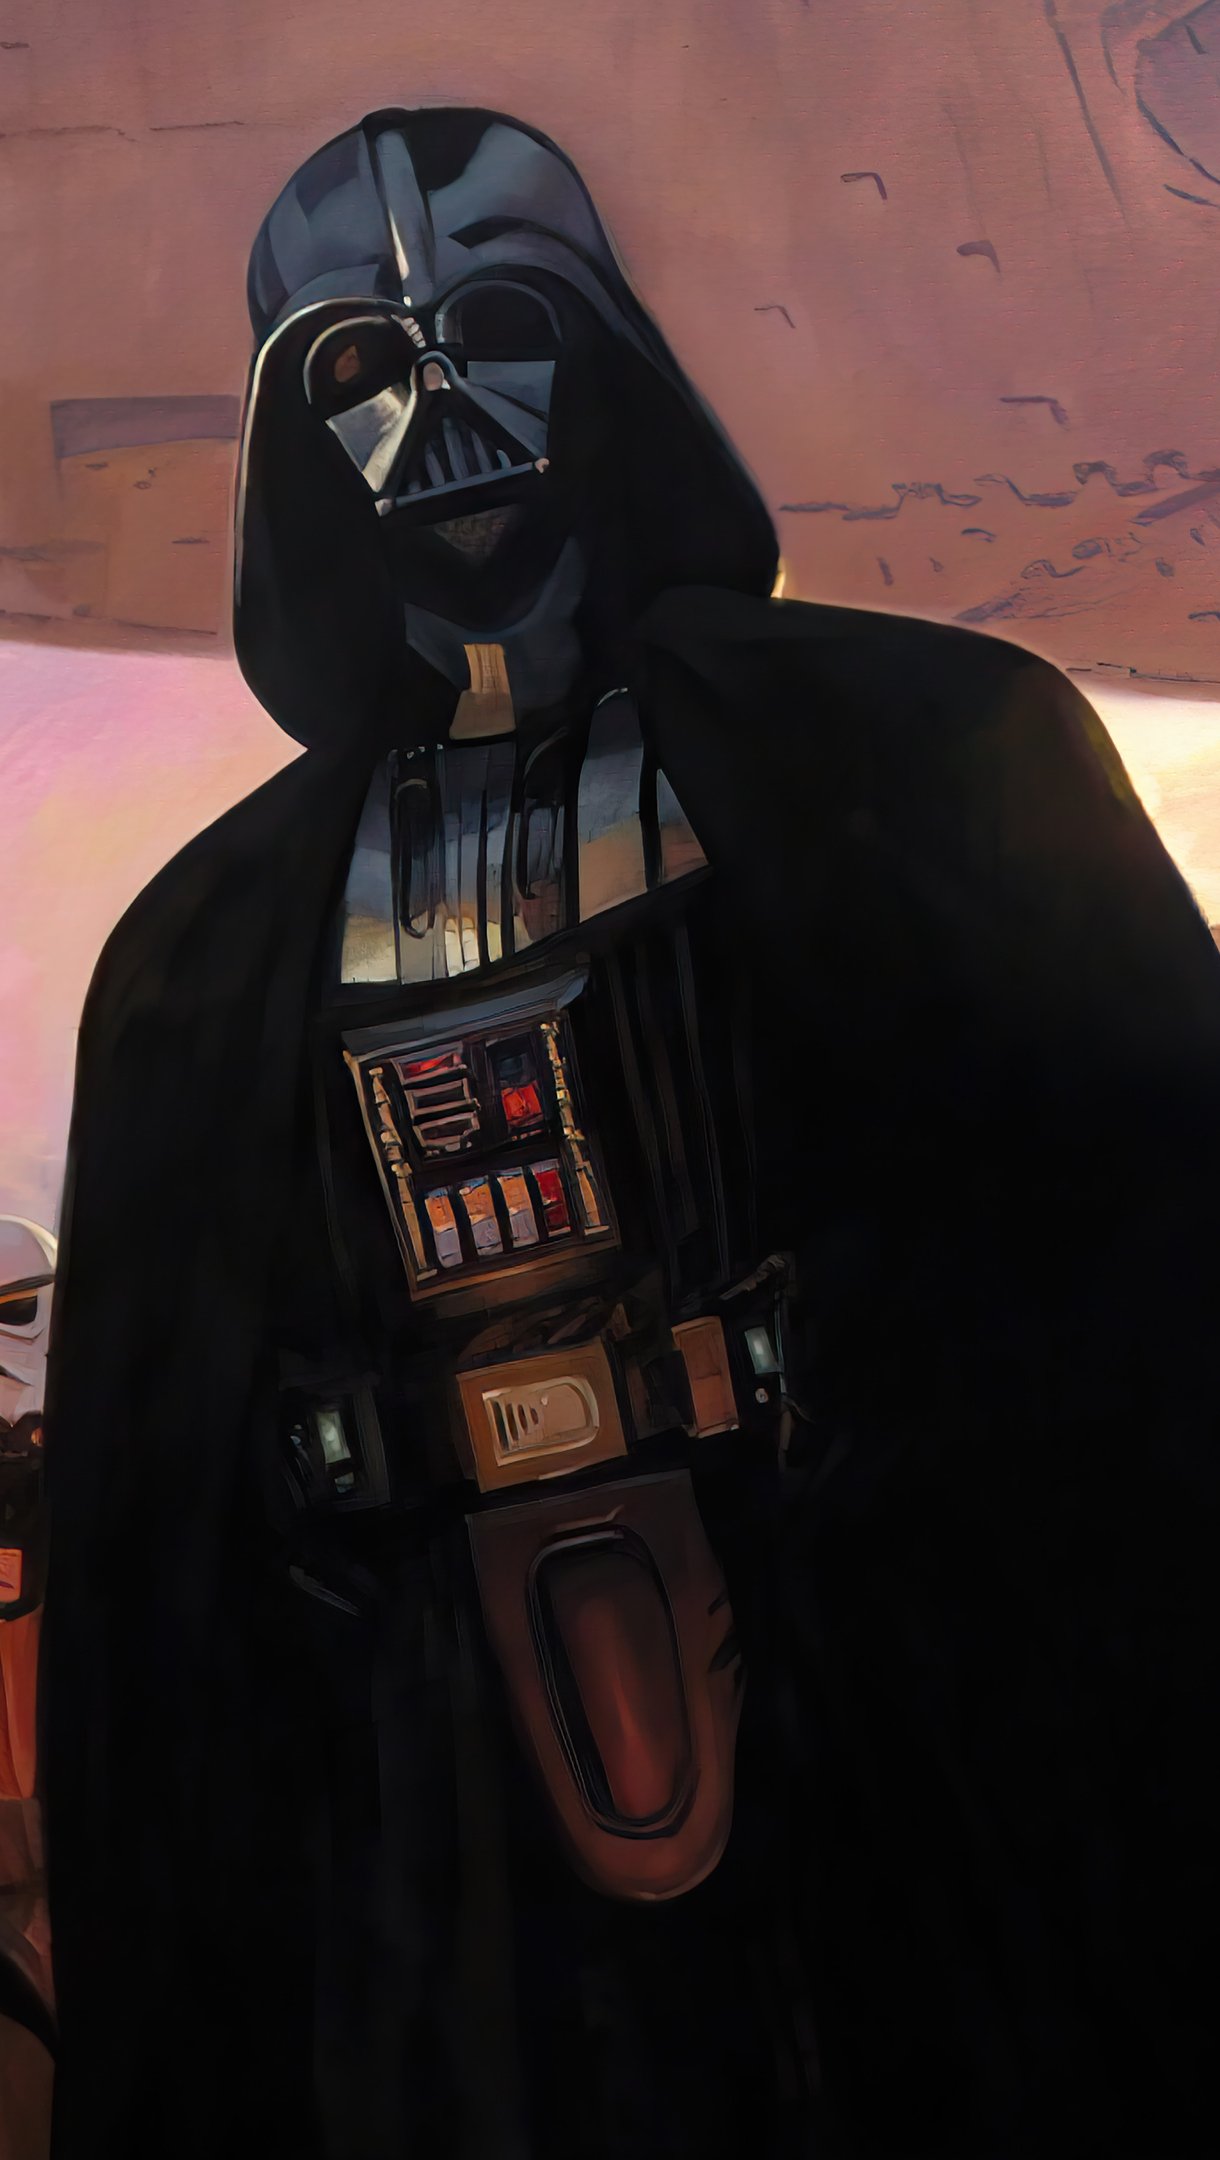 Fondos de pantalla Darth Vader con Stormtroopers Vertical